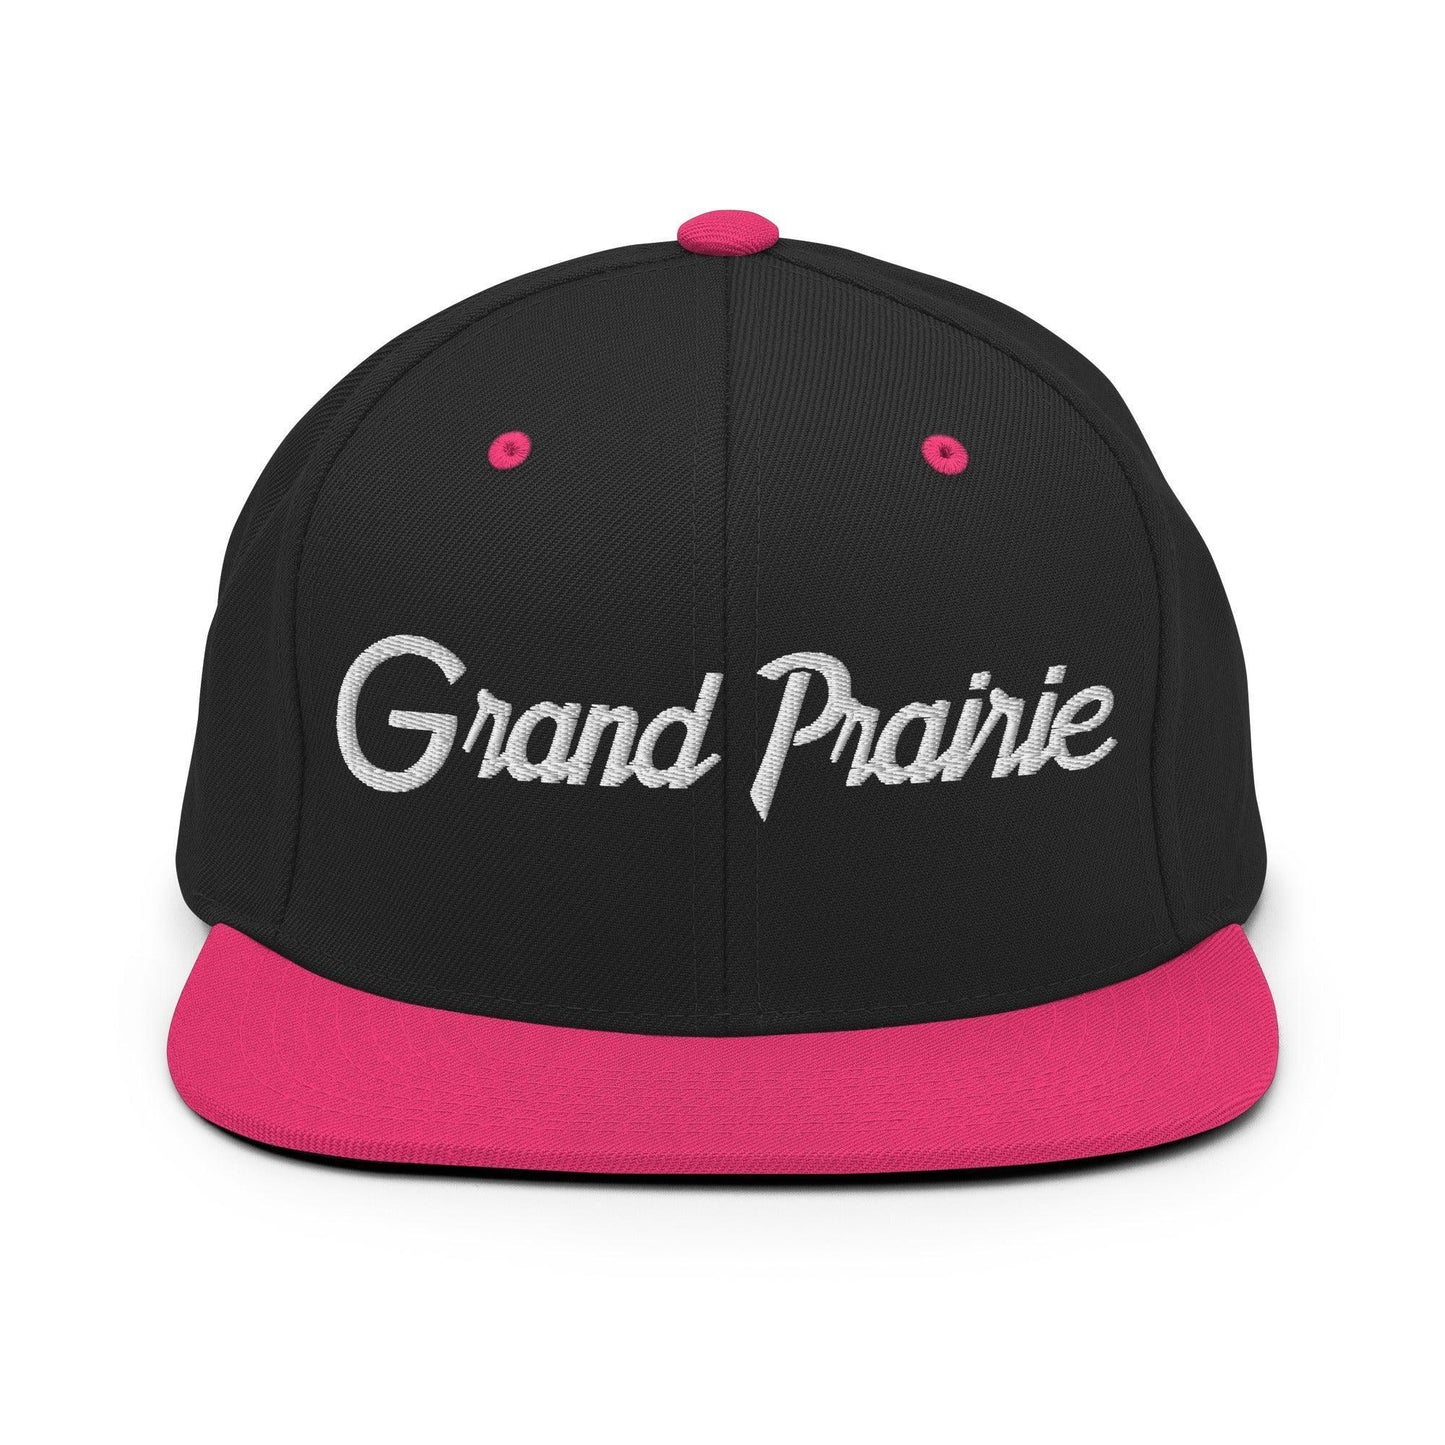 Grand Prairie Script Snapback Hat Black Neon Pink